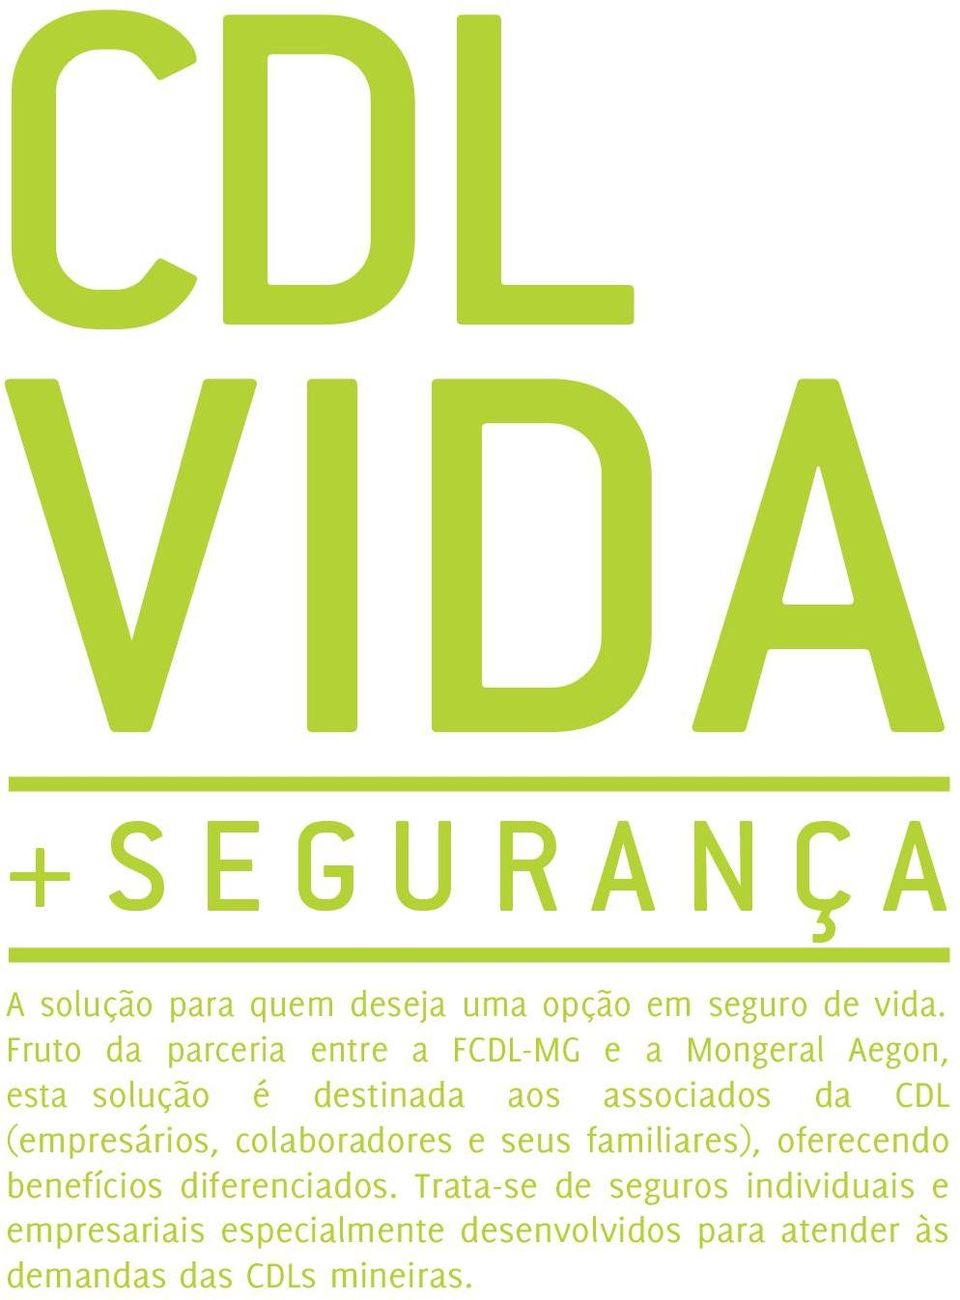 CDL (empresários, colaboradores e seus familiares), oferecendo benefícios diferenciados.